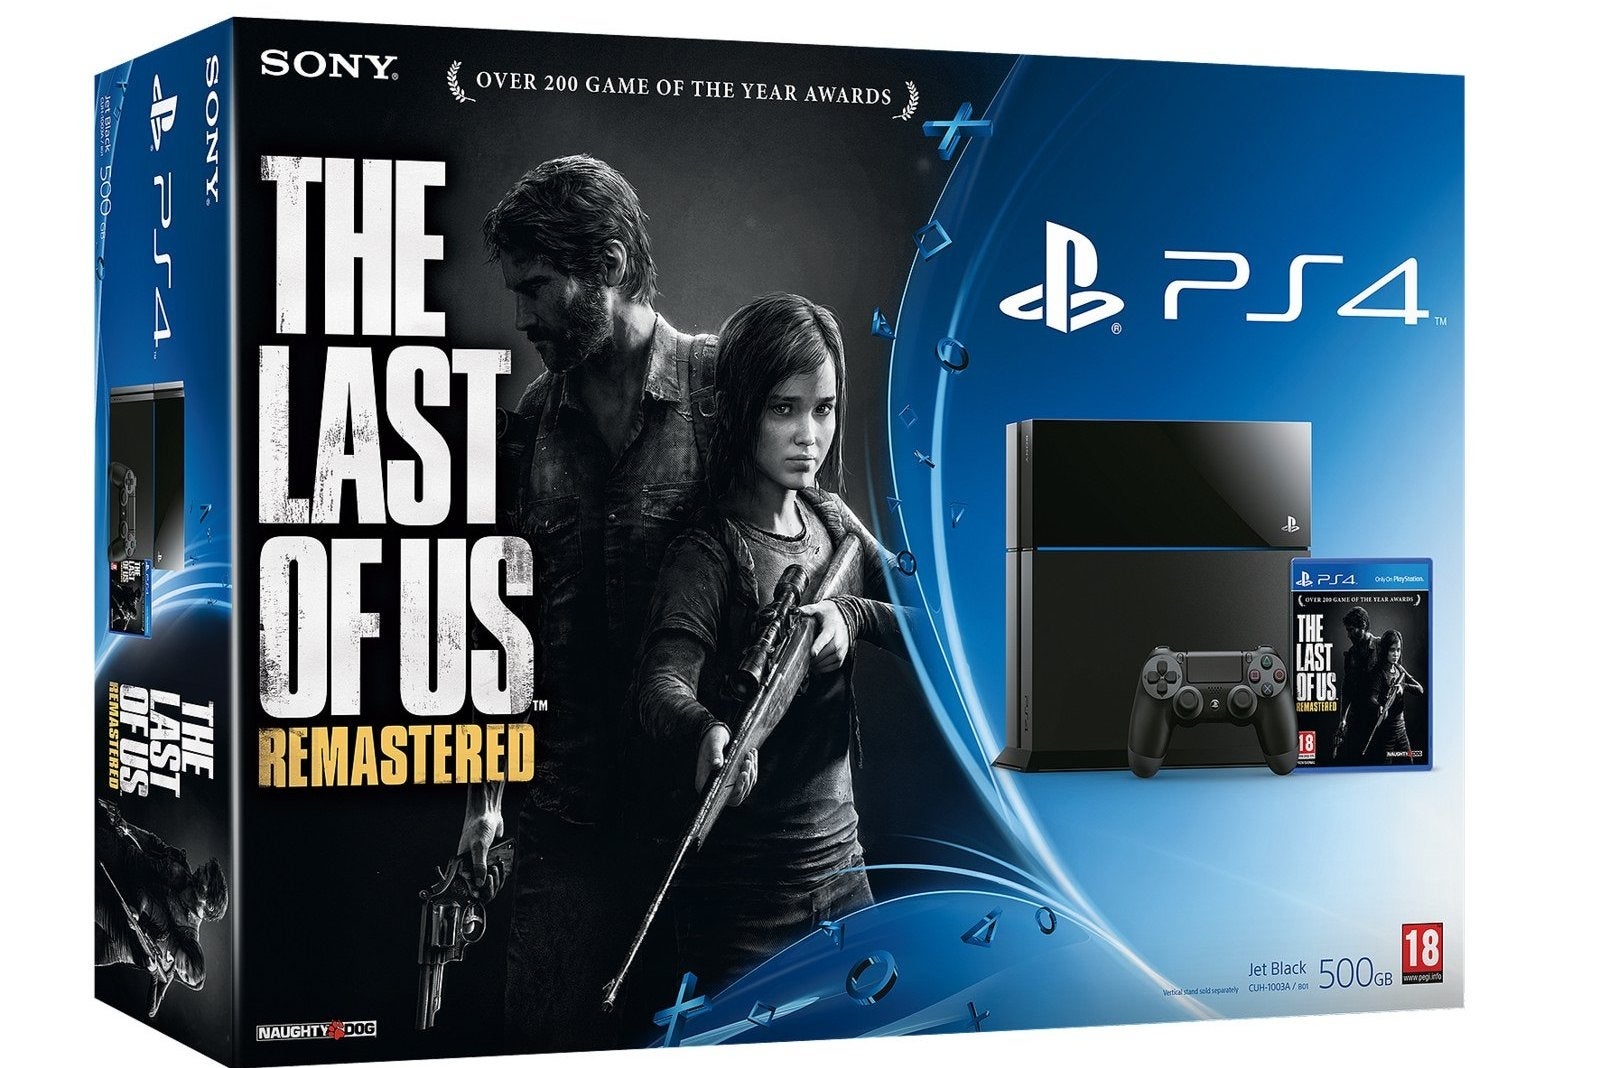 Imagem para Anunciado bundle PS4 com The Last of Us Remastered